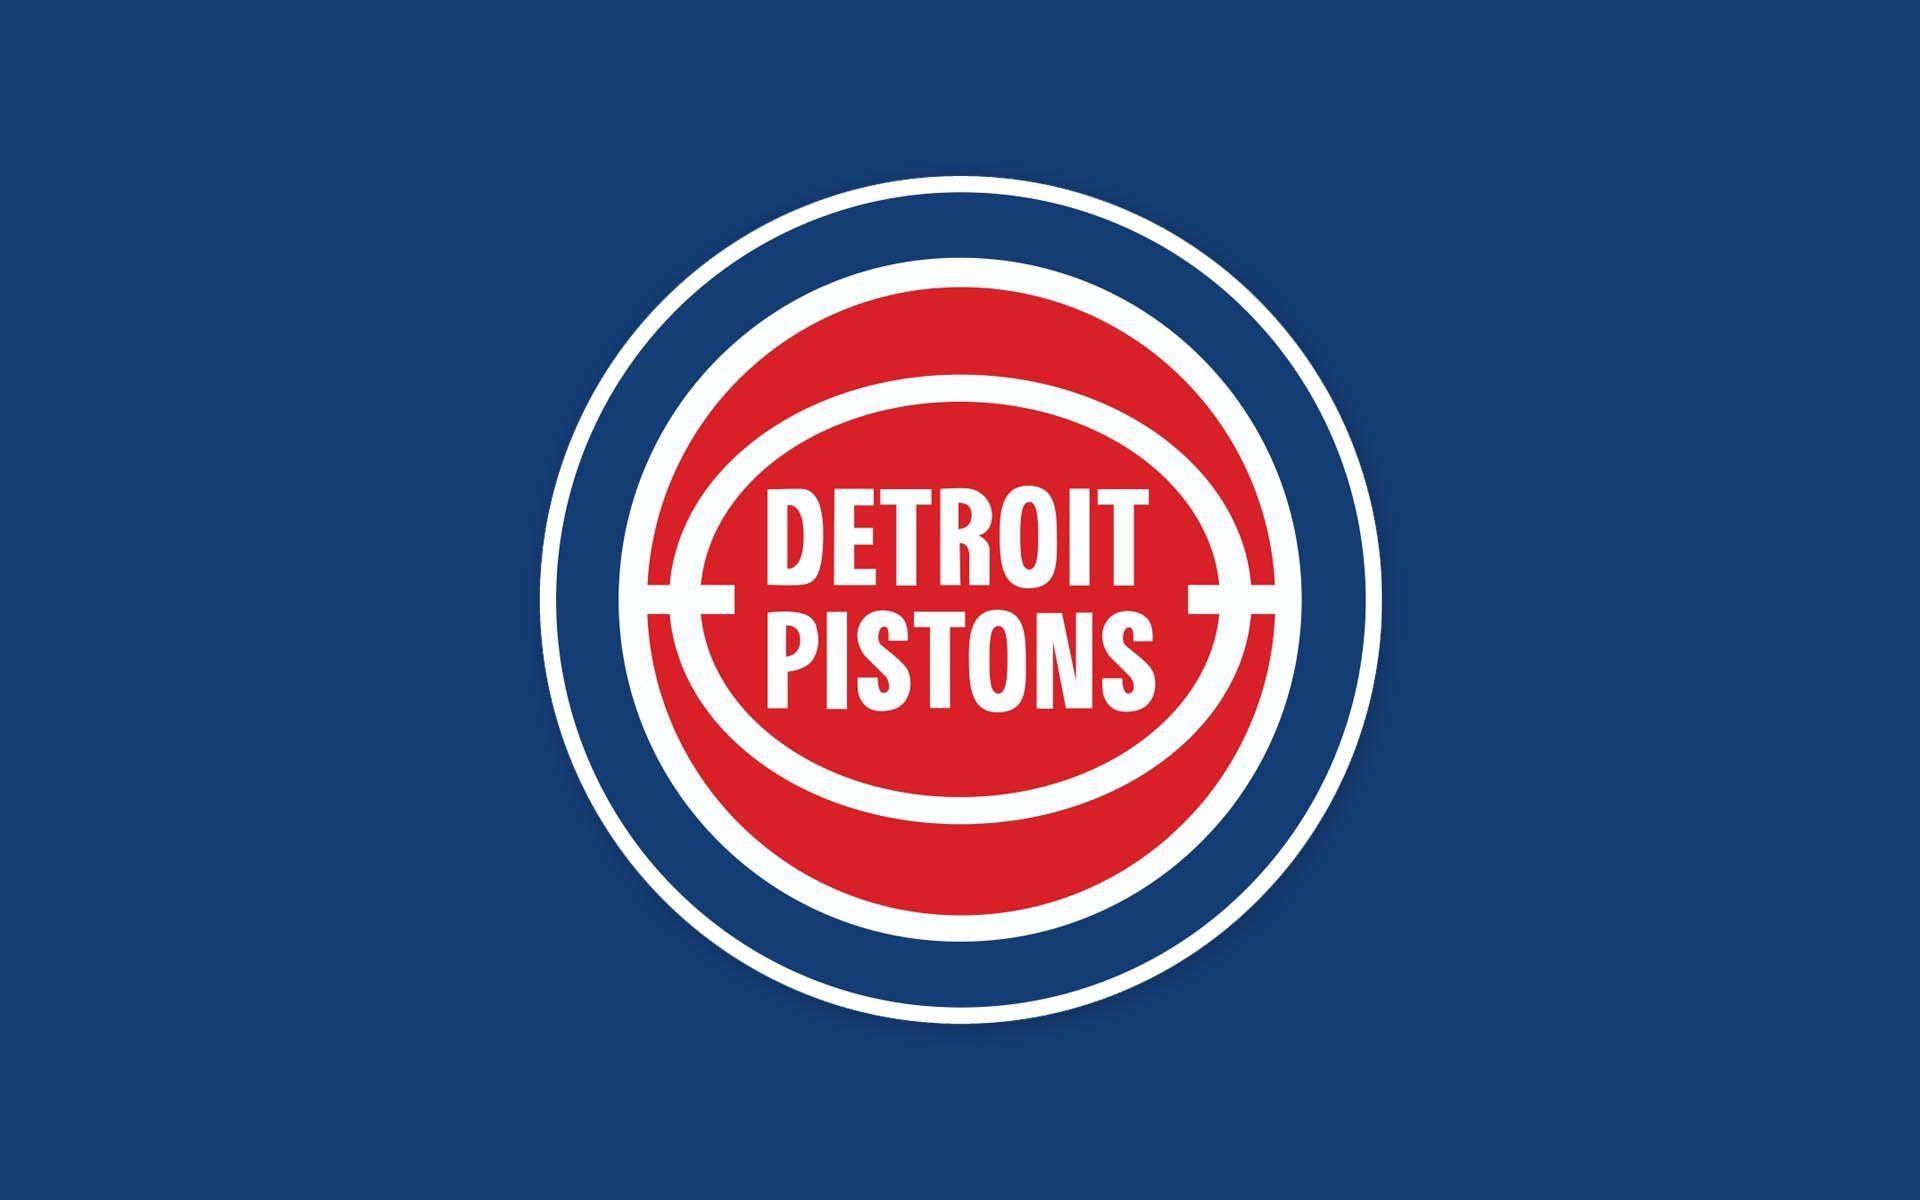 Detroit Pistons Complementing Team Colors